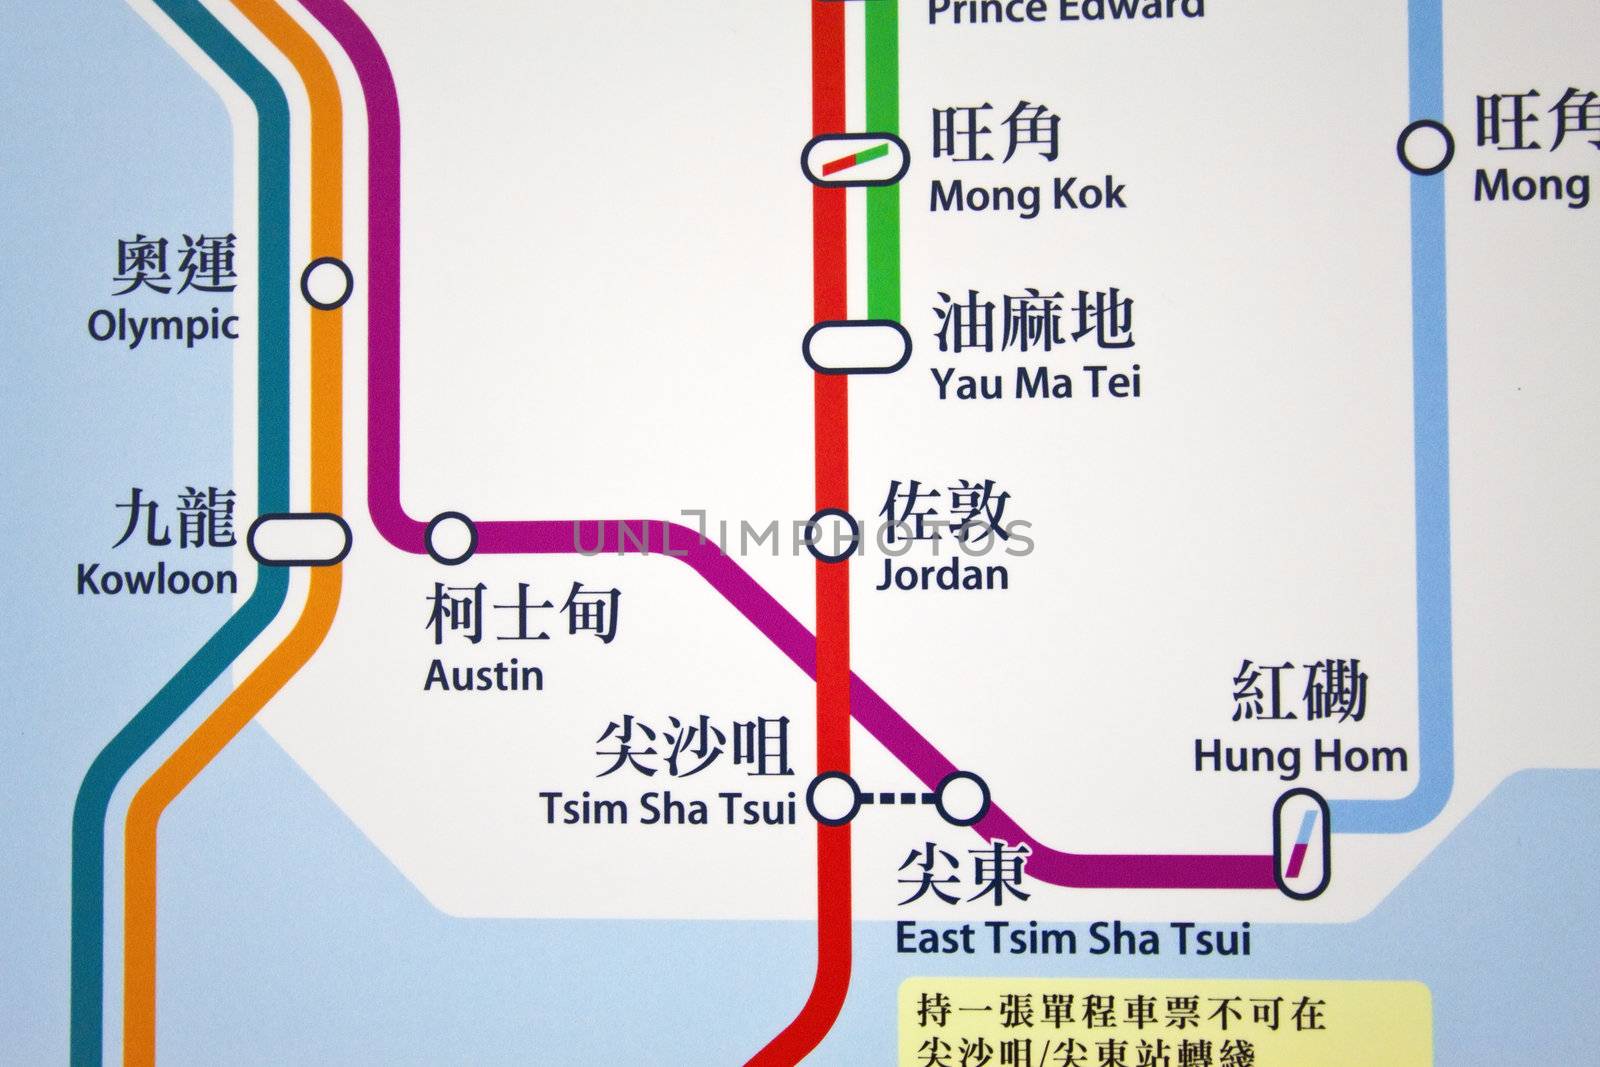 Hong Kong MTR route map by kawing921